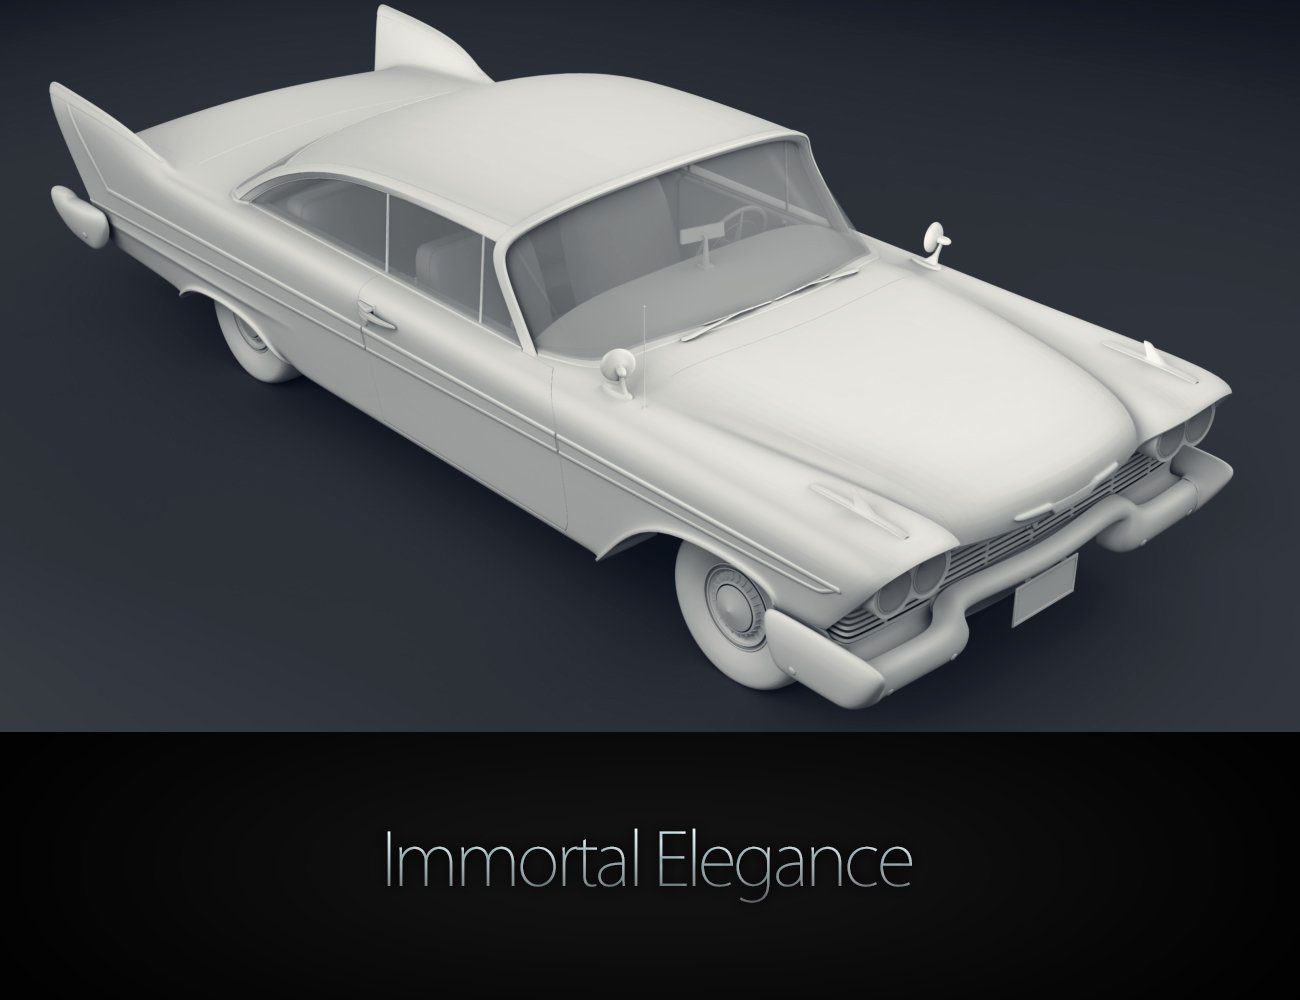 Immortal Elegance by: Elele, 3D Models by Daz 3D